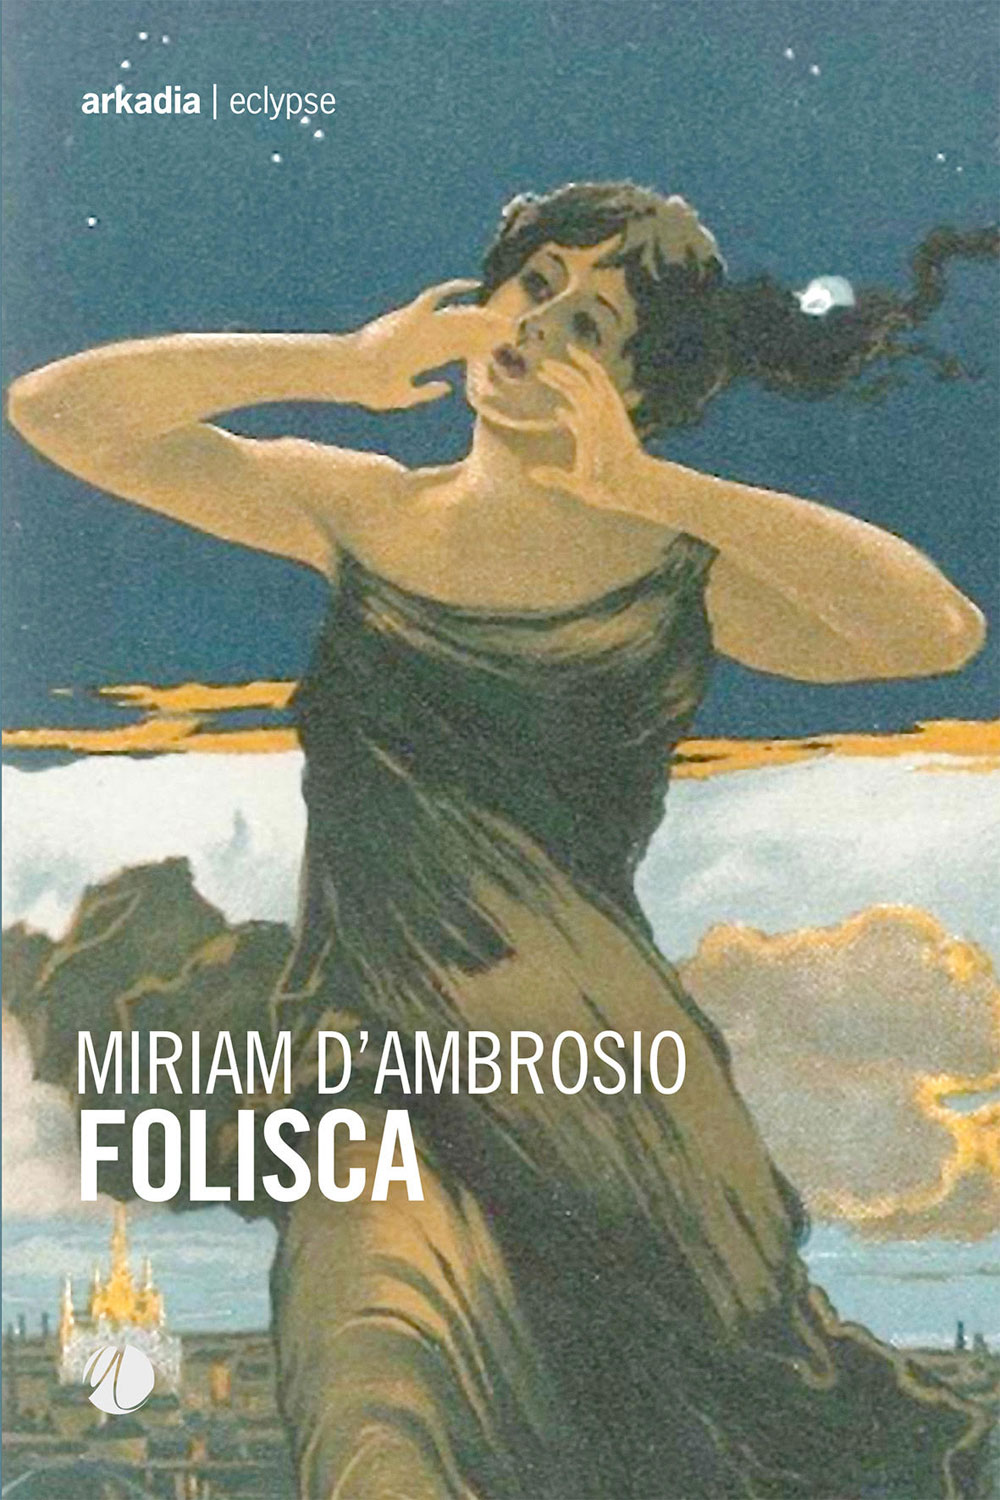 “Folisca” il nuovo romanzo di Miriam D’Ambrosio, in libreria e negli store digitali